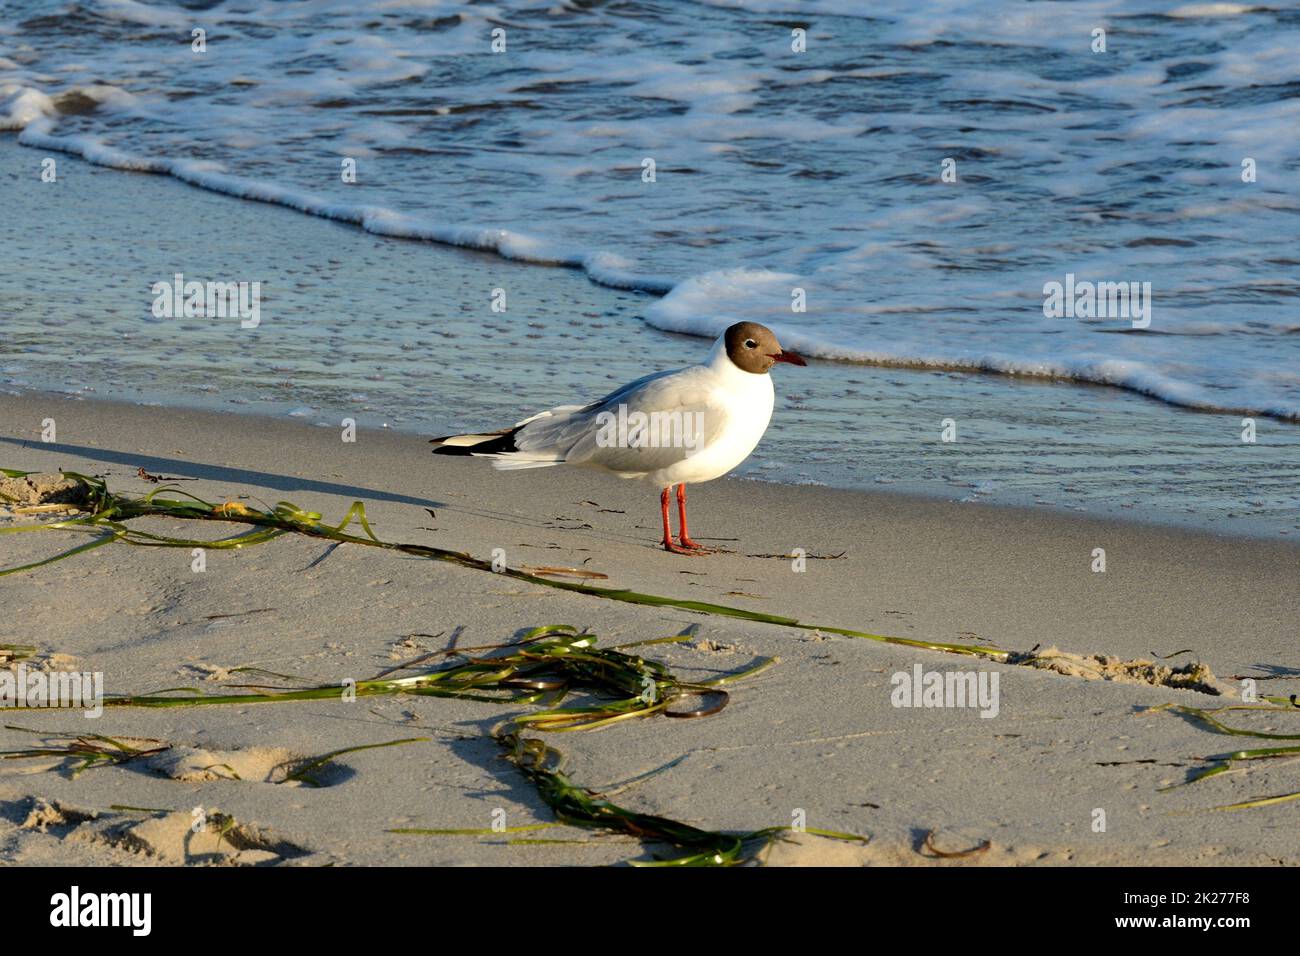 Black-headed Gull - Larus ridibundus - on beach coastline Stock Photo